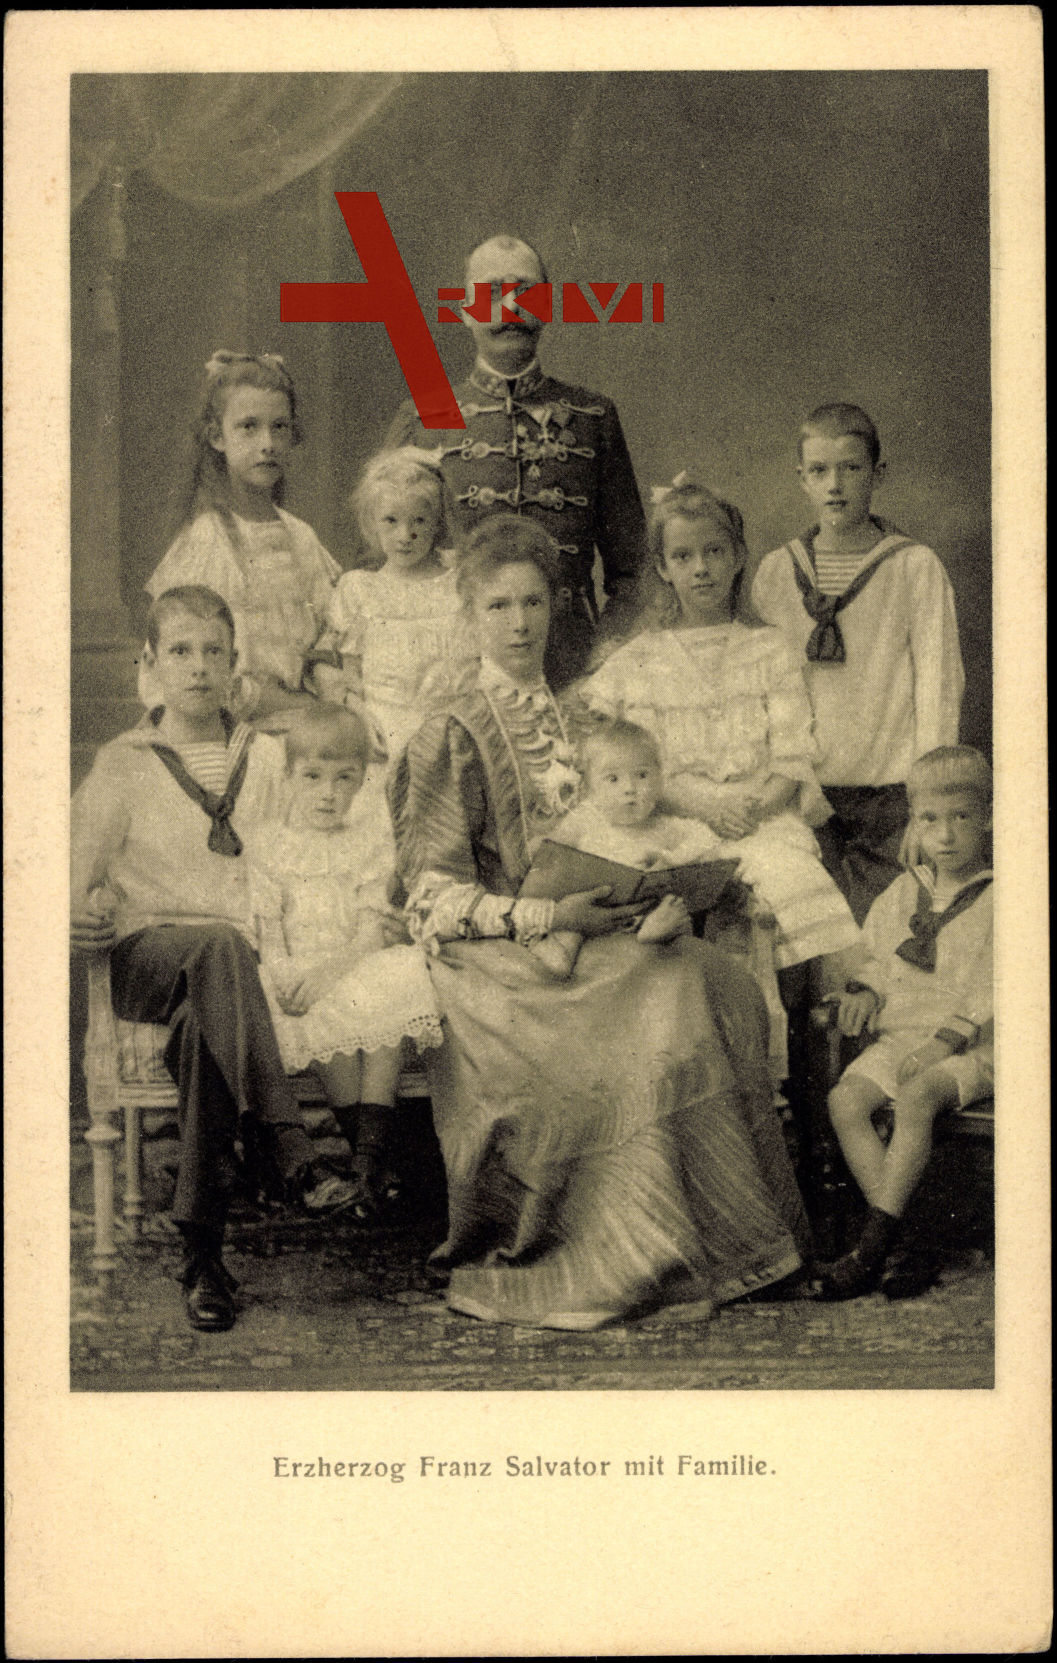 Erzherzog Franz Salvator von Österreich mit Familie